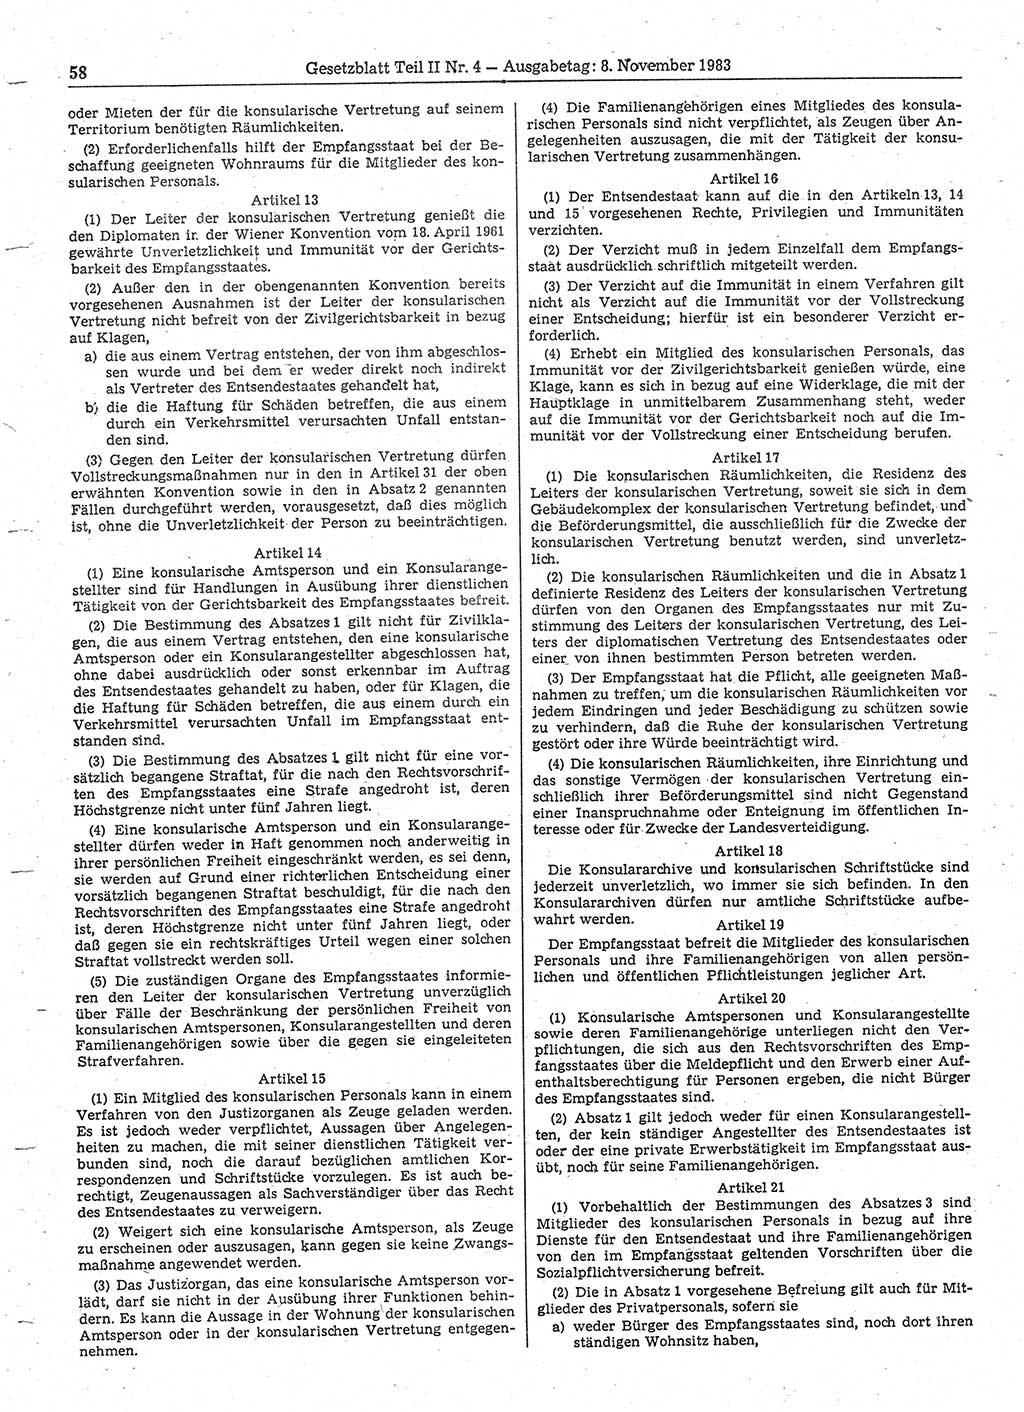 Gesetzblatt (GBl.) der Deutschen Demokratischen Republik (DDR) Teil ⅠⅠ 1983, Seite 58 (GBl. DDR ⅠⅠ 1983, S. 58)